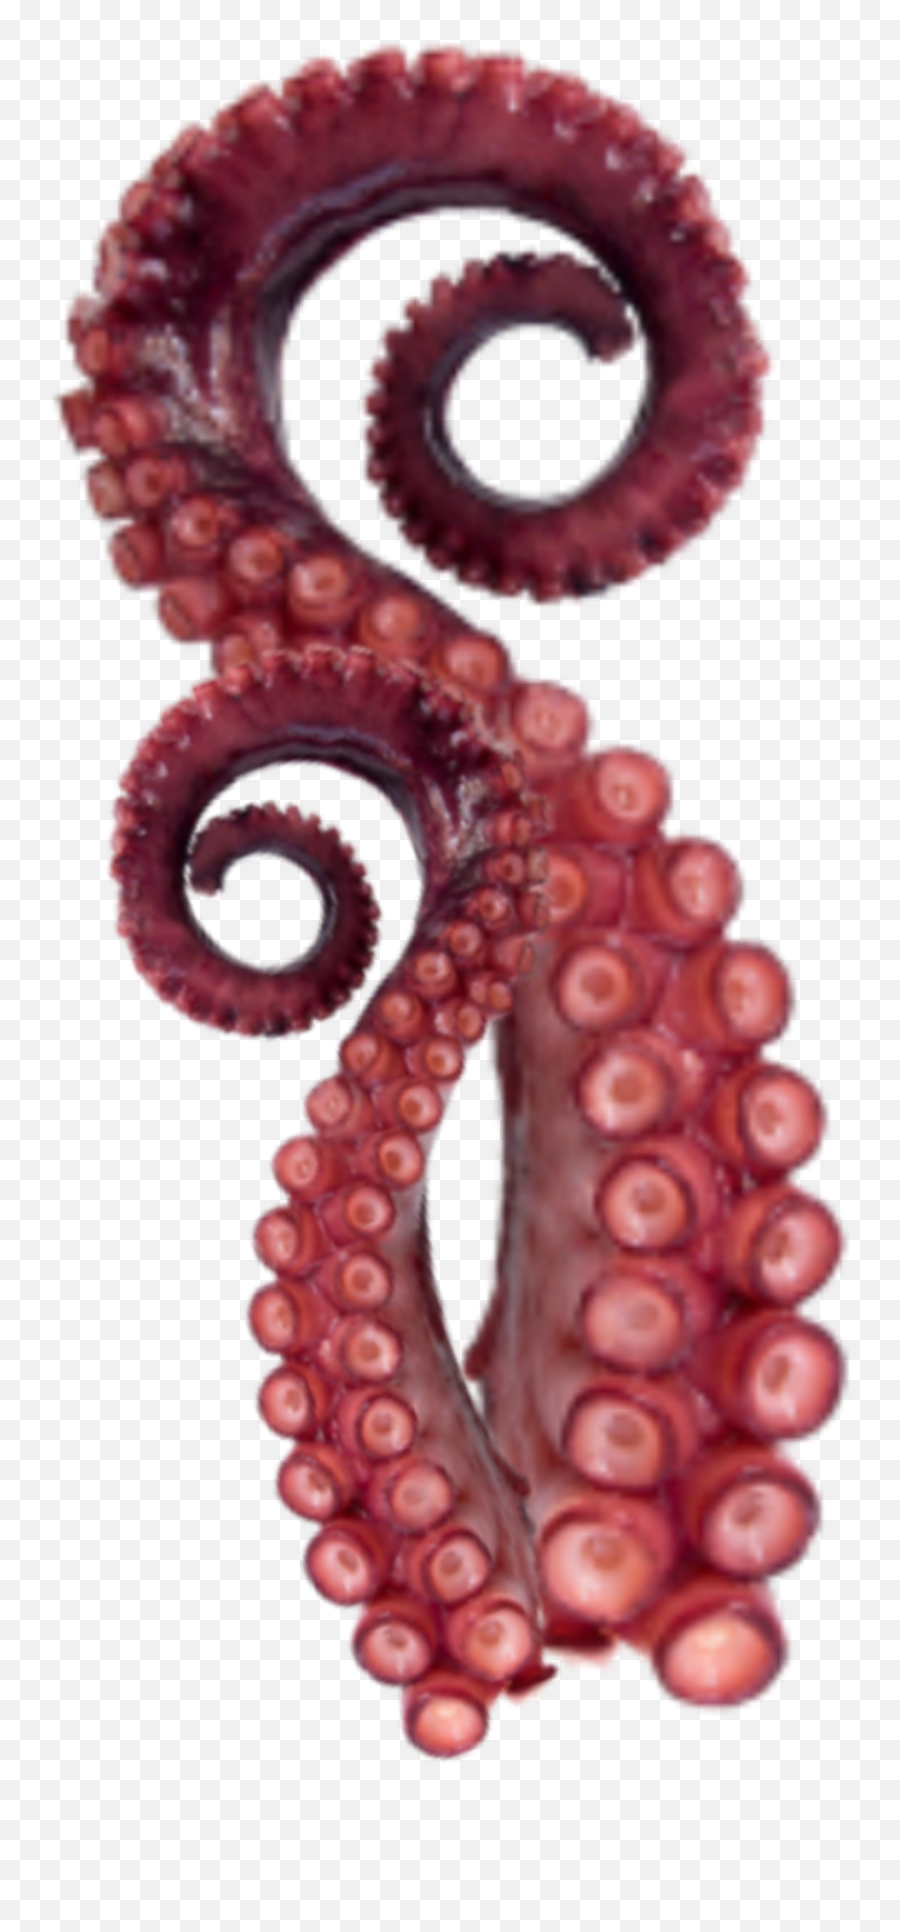 The Most Edited Octopus Picsart - Tentaculo De Pulpo Png Emoji,:octopus: Emoticon